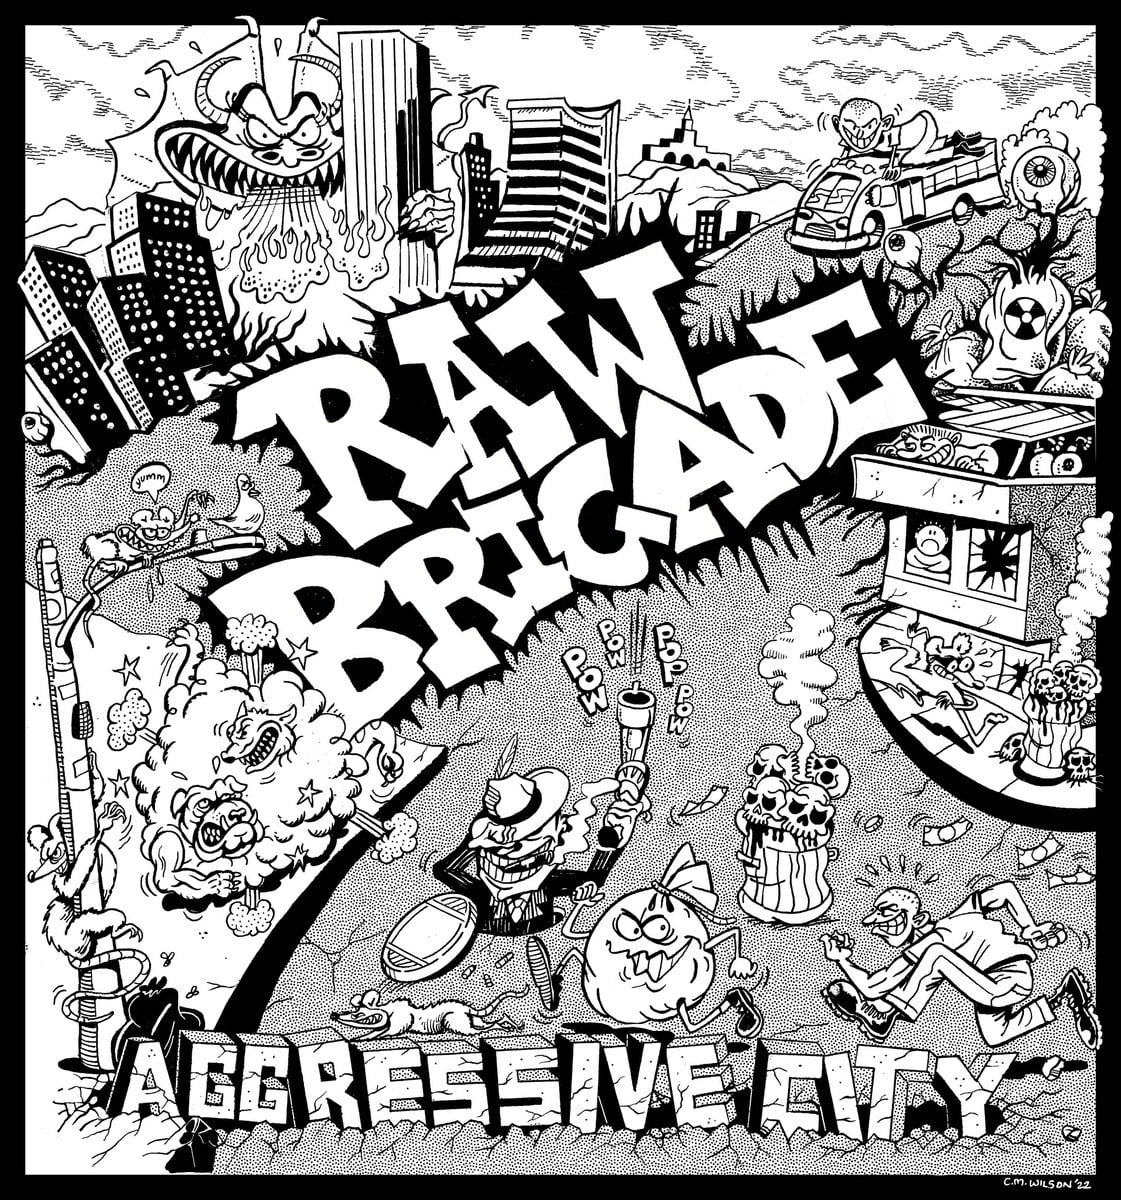 Raw Brigade_Aggressive City